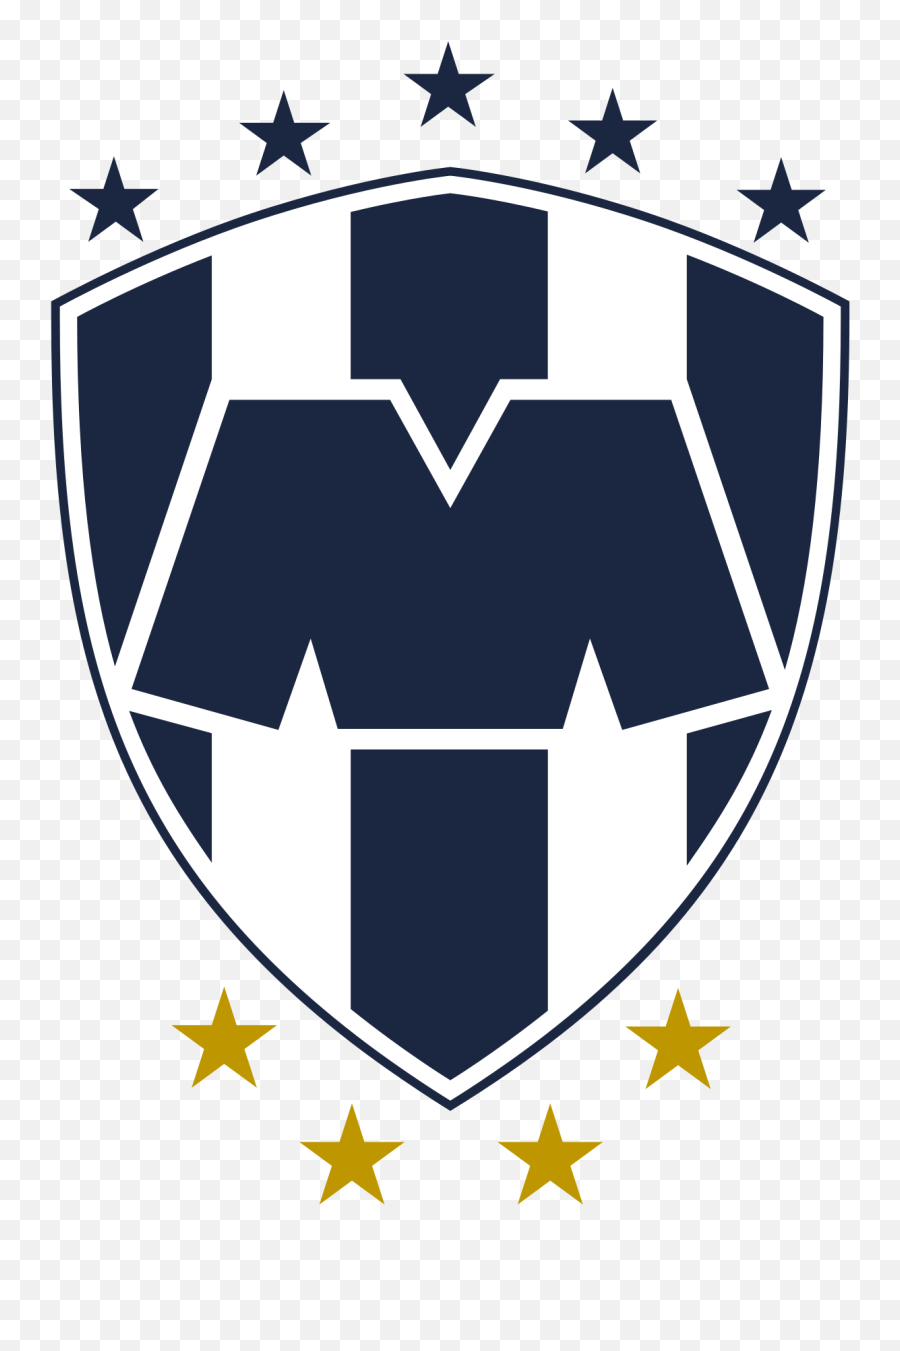 C - Logo De Monterrey Emoji,Emoticons Para Facebook Del Grupo Chivas